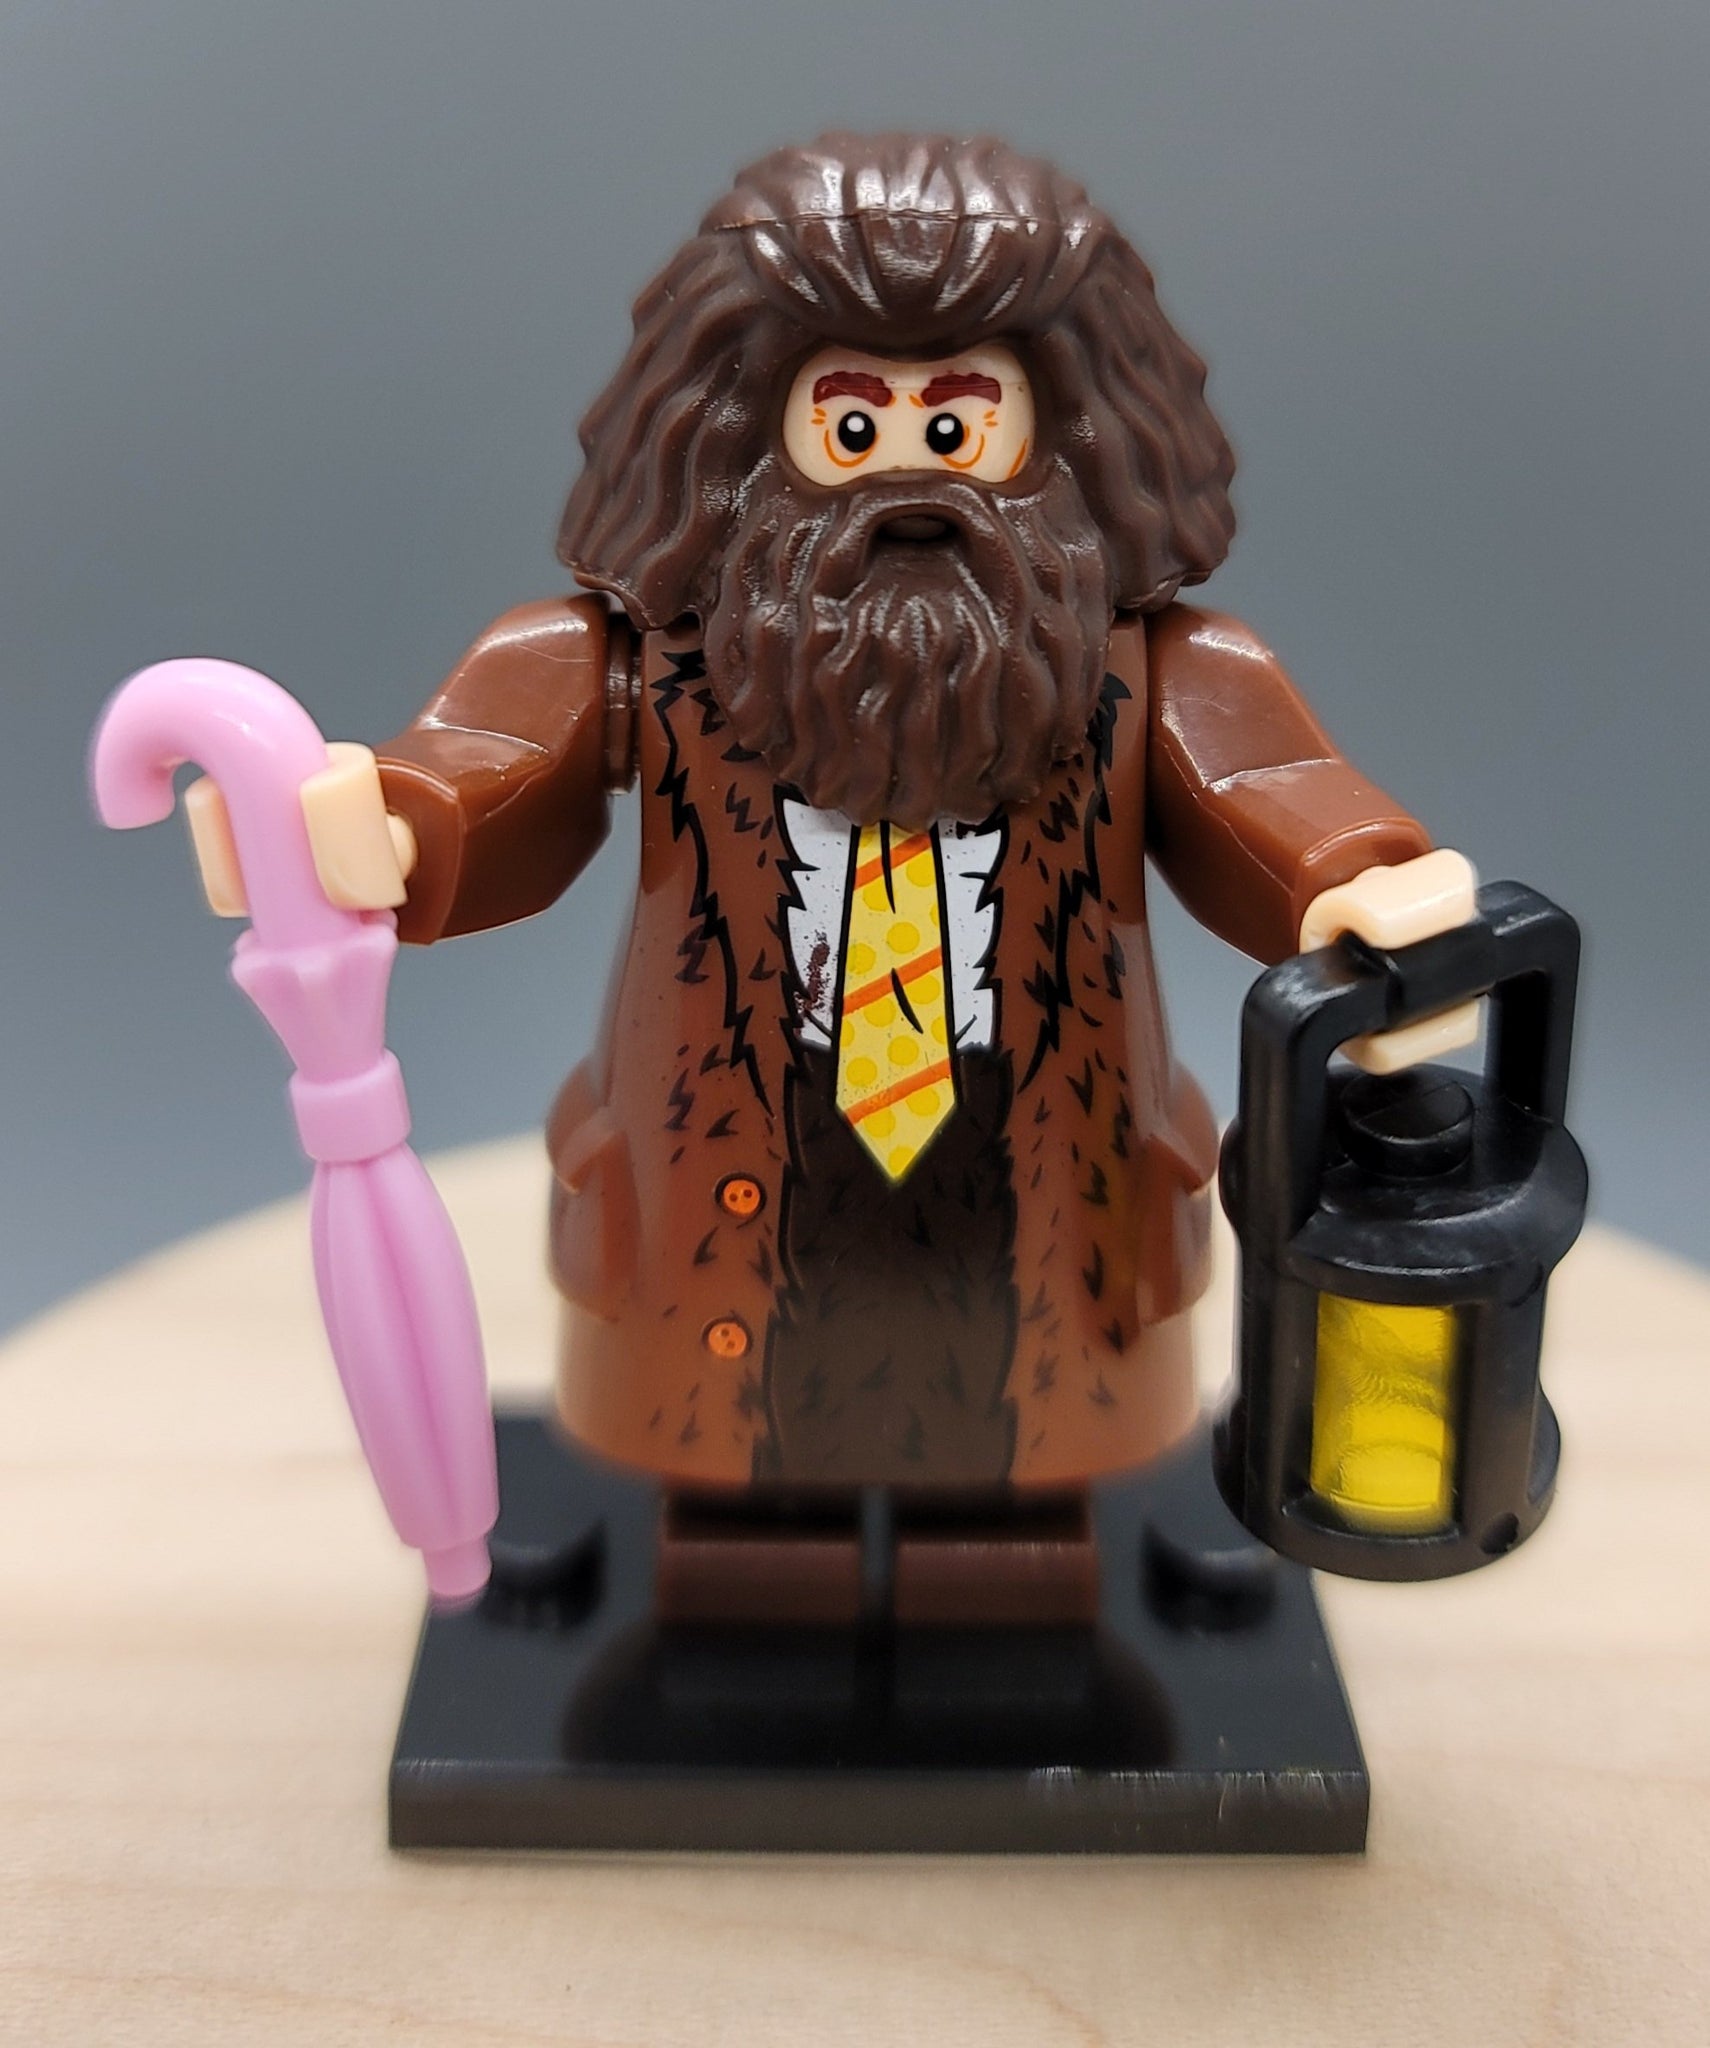 Hagrid Custom minifigure by Beaus Bricks. Brand new in package.  Please visit shop, lots more! - BeausBricks